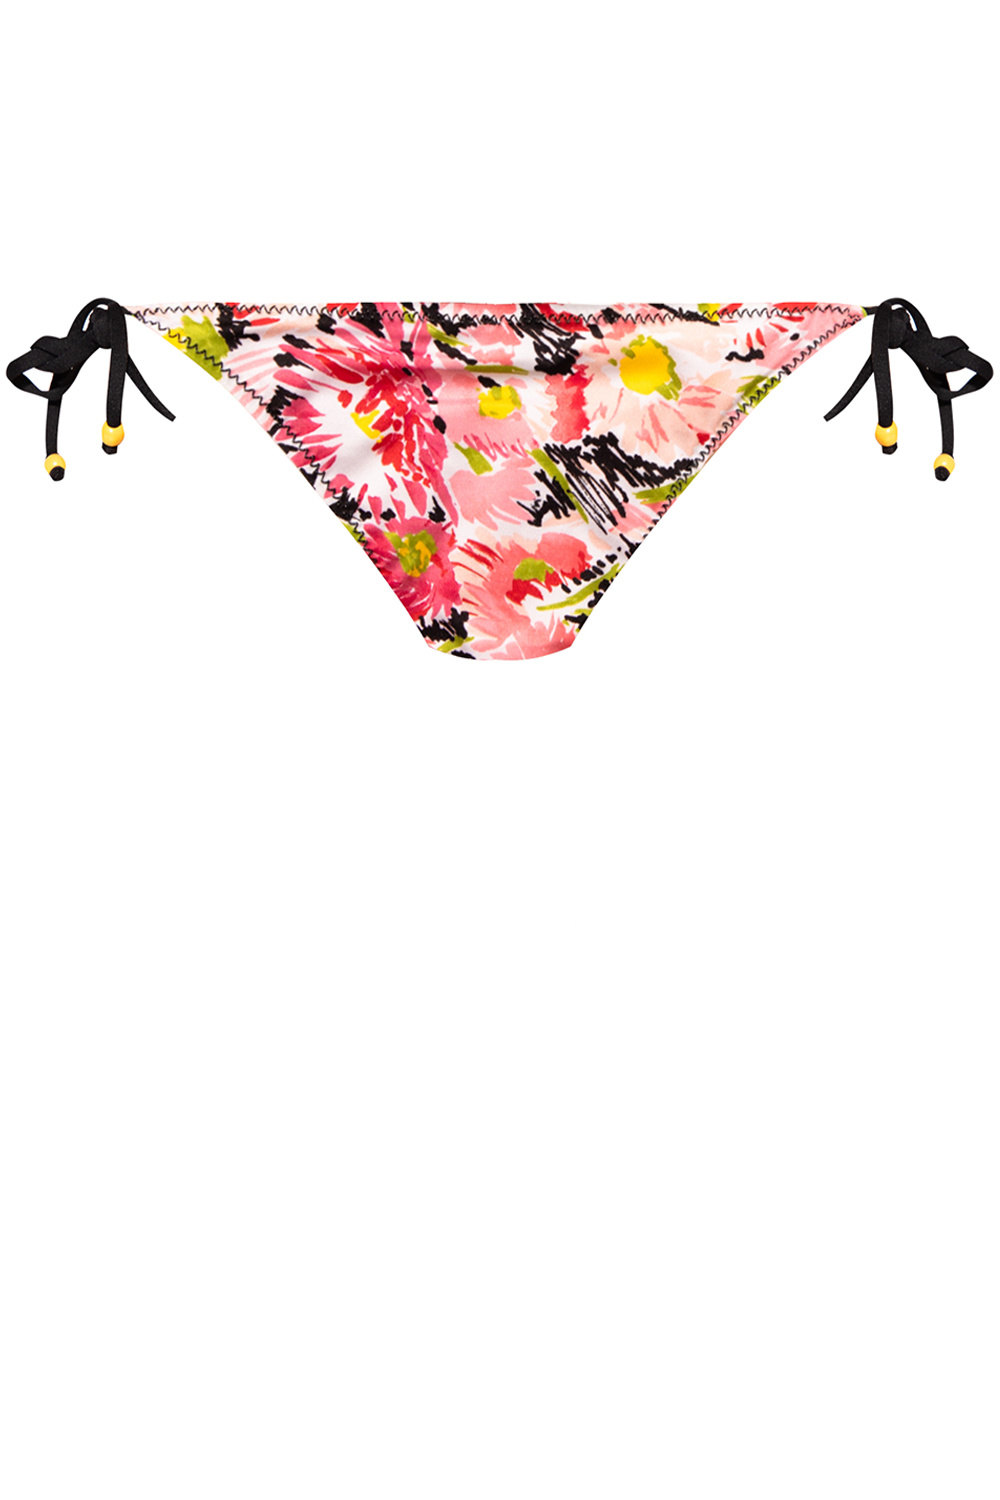 Stella McCartney ‘Watercolour Floral’ bikini bottom